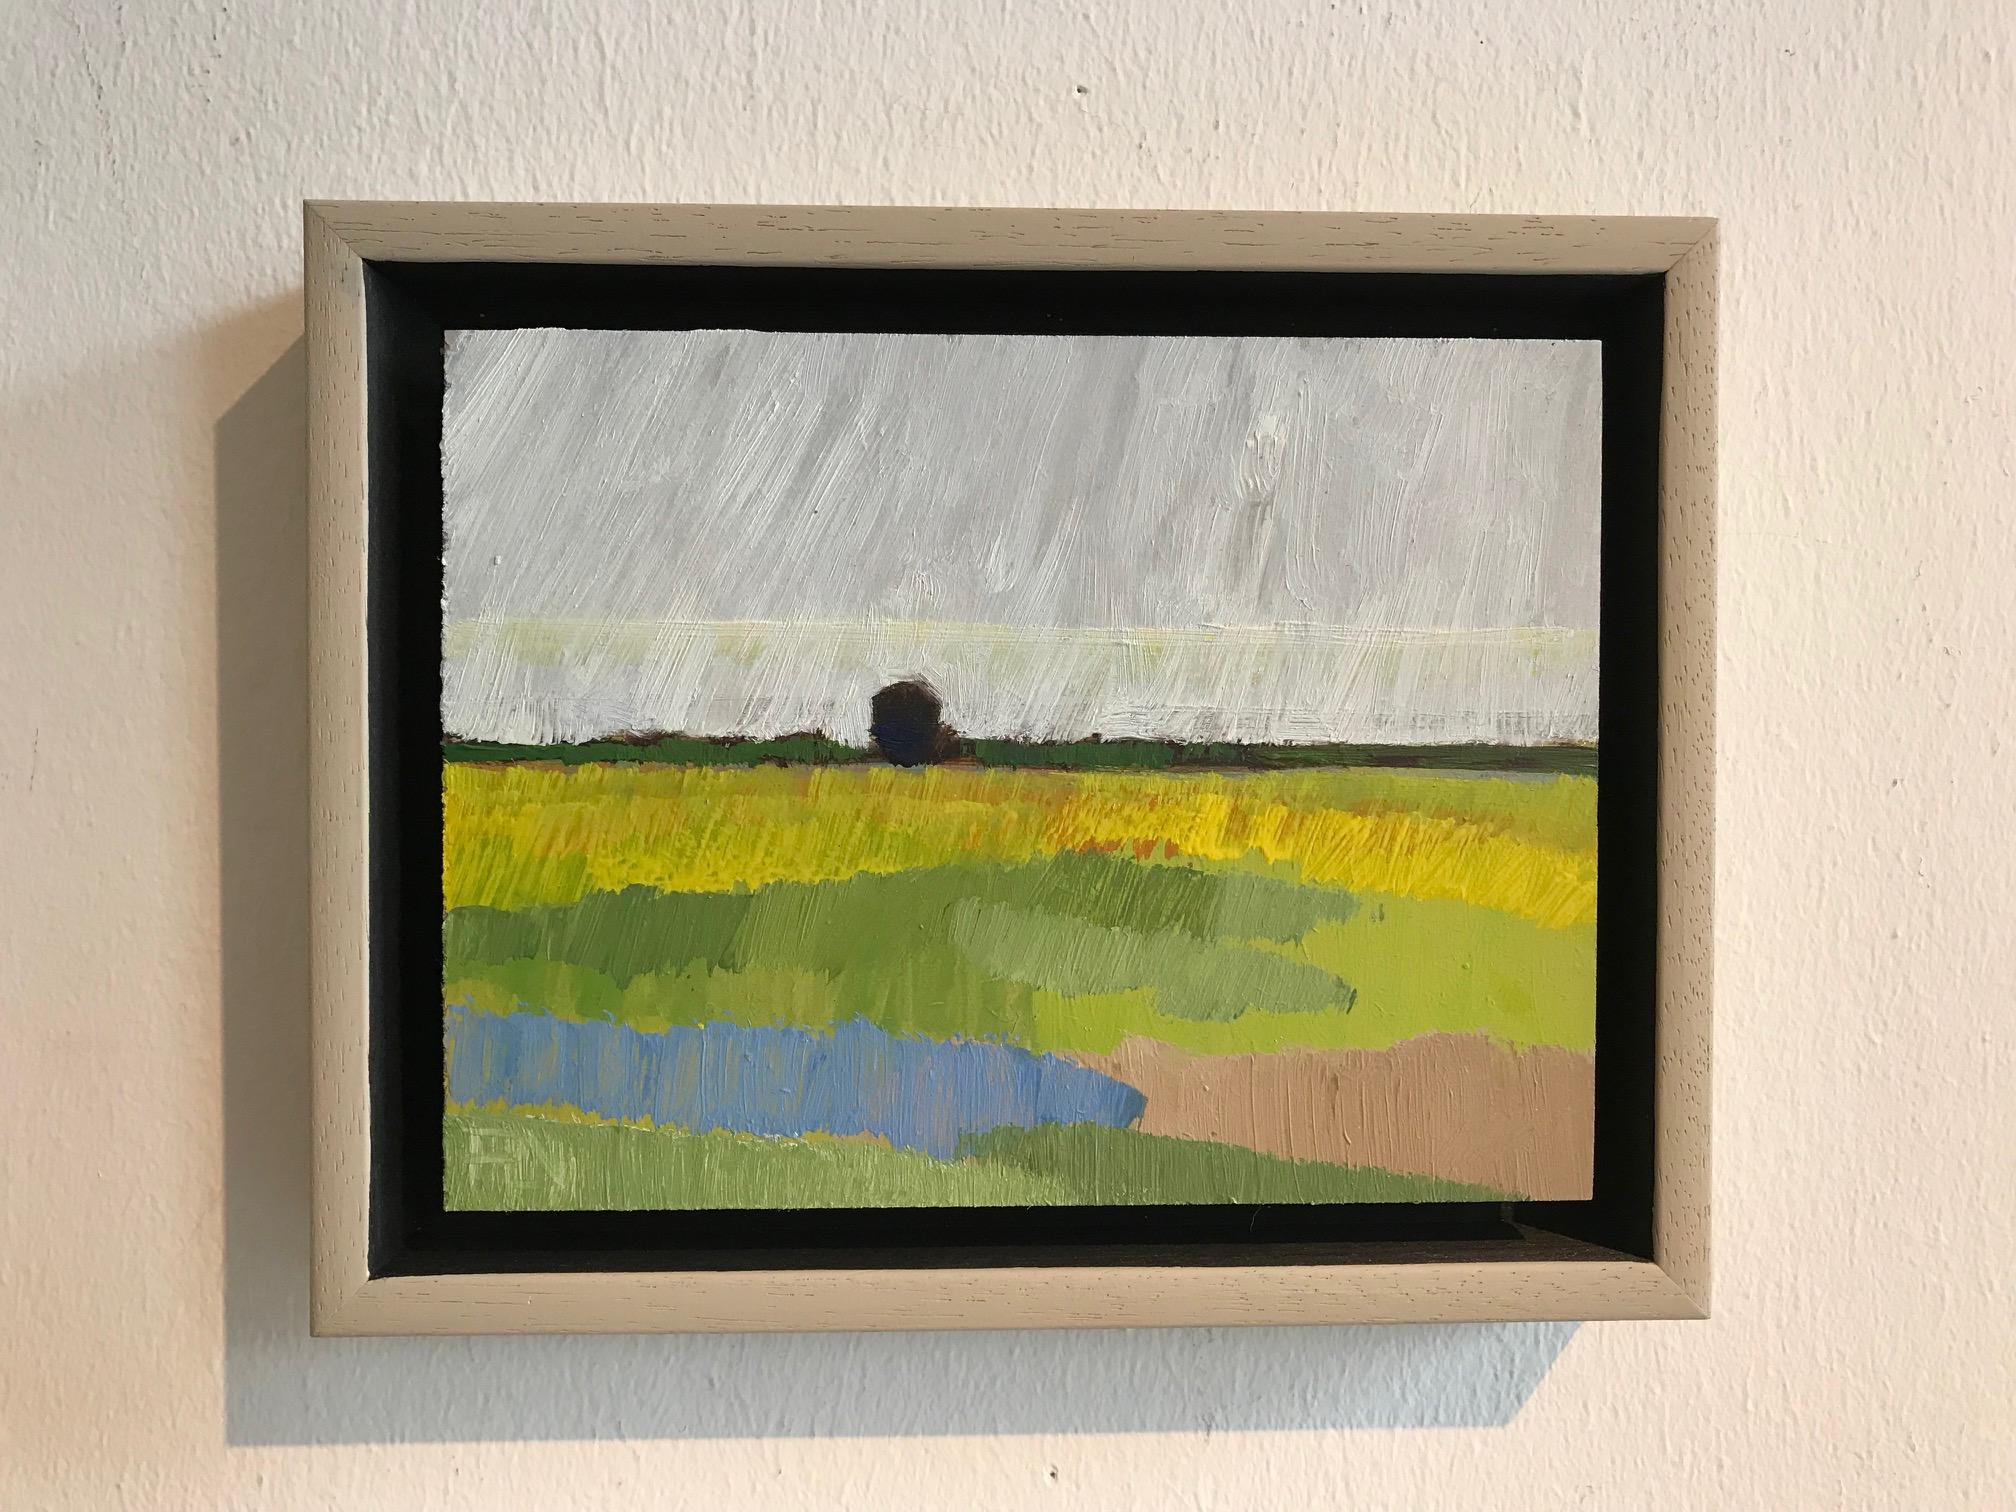 ''Landscape Miniature 0621''Contemporary Dutch Landscape Miniature Oil Painting  - Brown Landscape Painting by Frank Dekkers